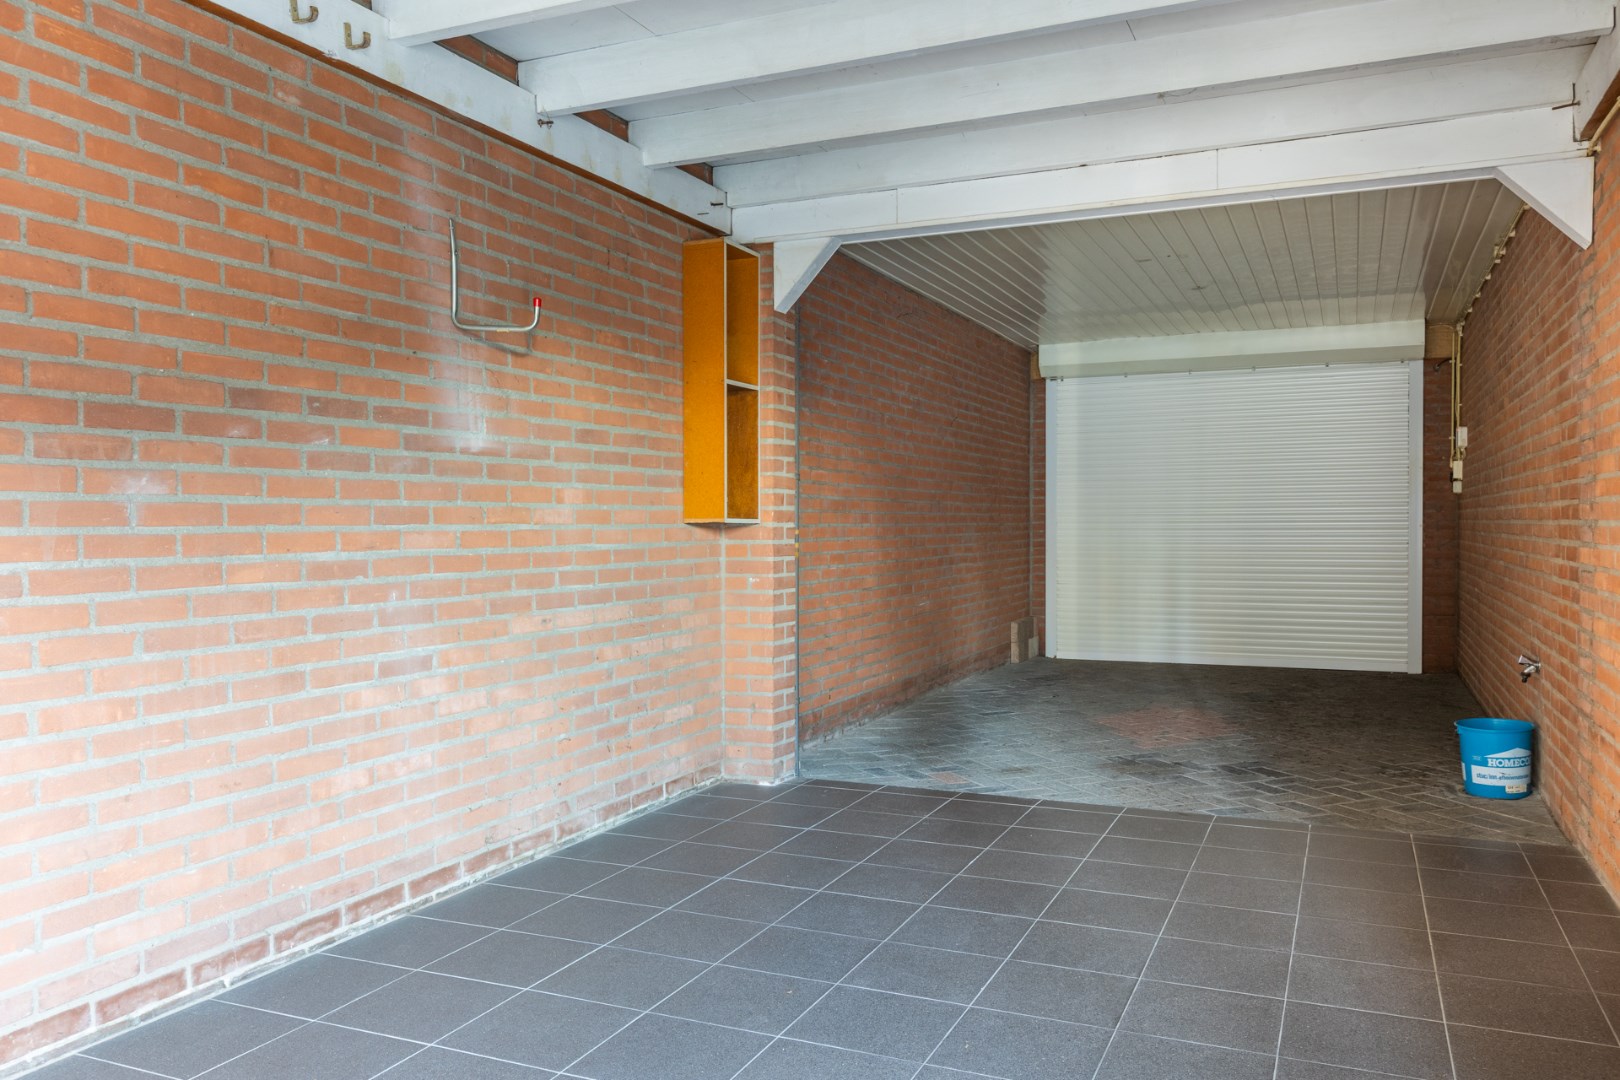 Keurig onderhouden hoekwoning met extra ruime garage en tuin, gelegen aan een woonerf in de gewilde wijk Boshoven. Energielabel C. 